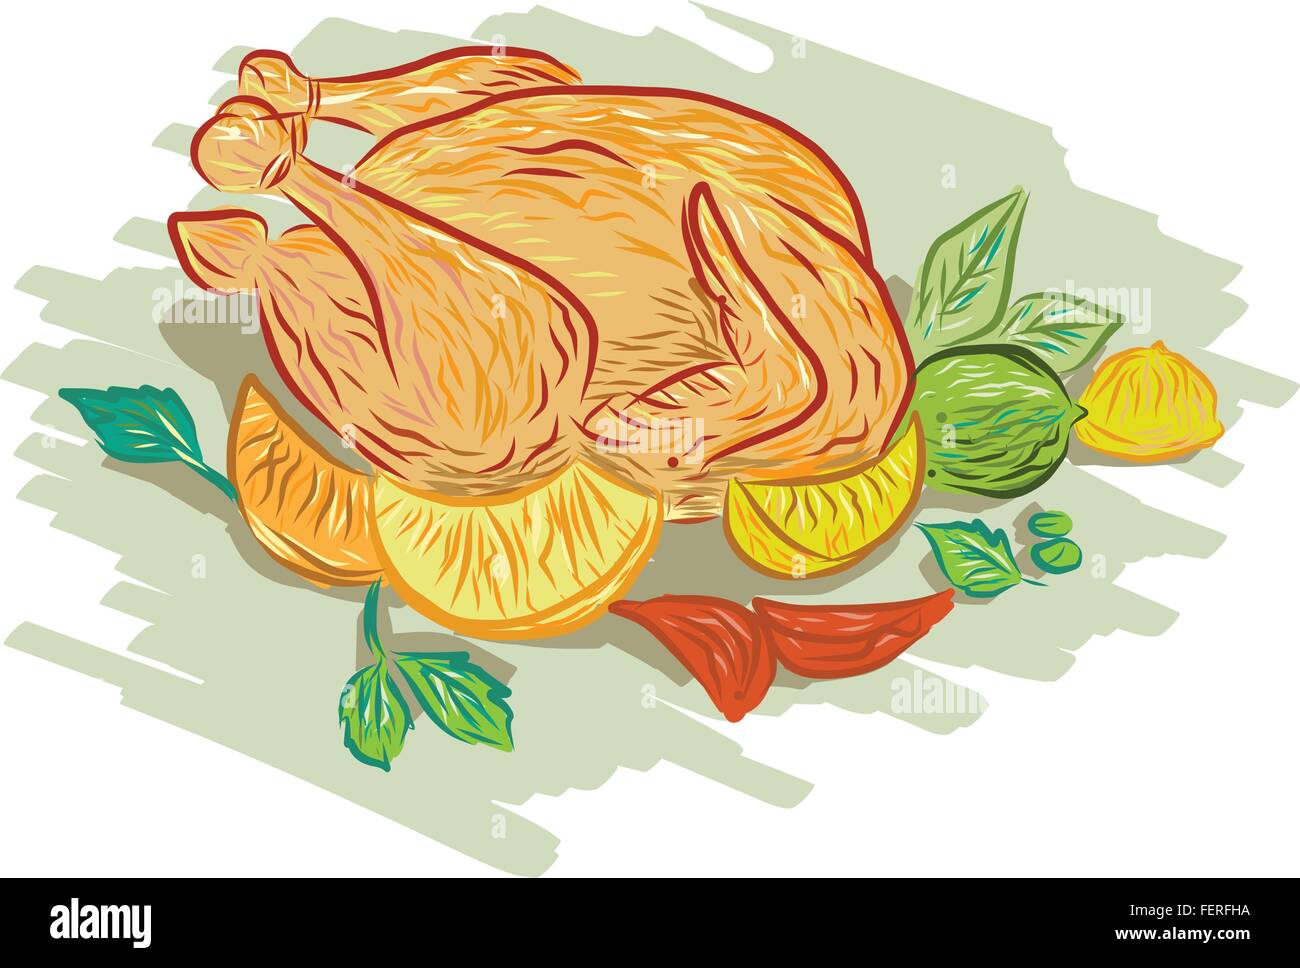 Zeichnung Skizze Stil Außenillustration gebratenes Huhn und Gemüse, Zitrone, Limette, Minze, Zwiebeln auf isolierten weißen Hintergrund gesetzt. Stock Vektor